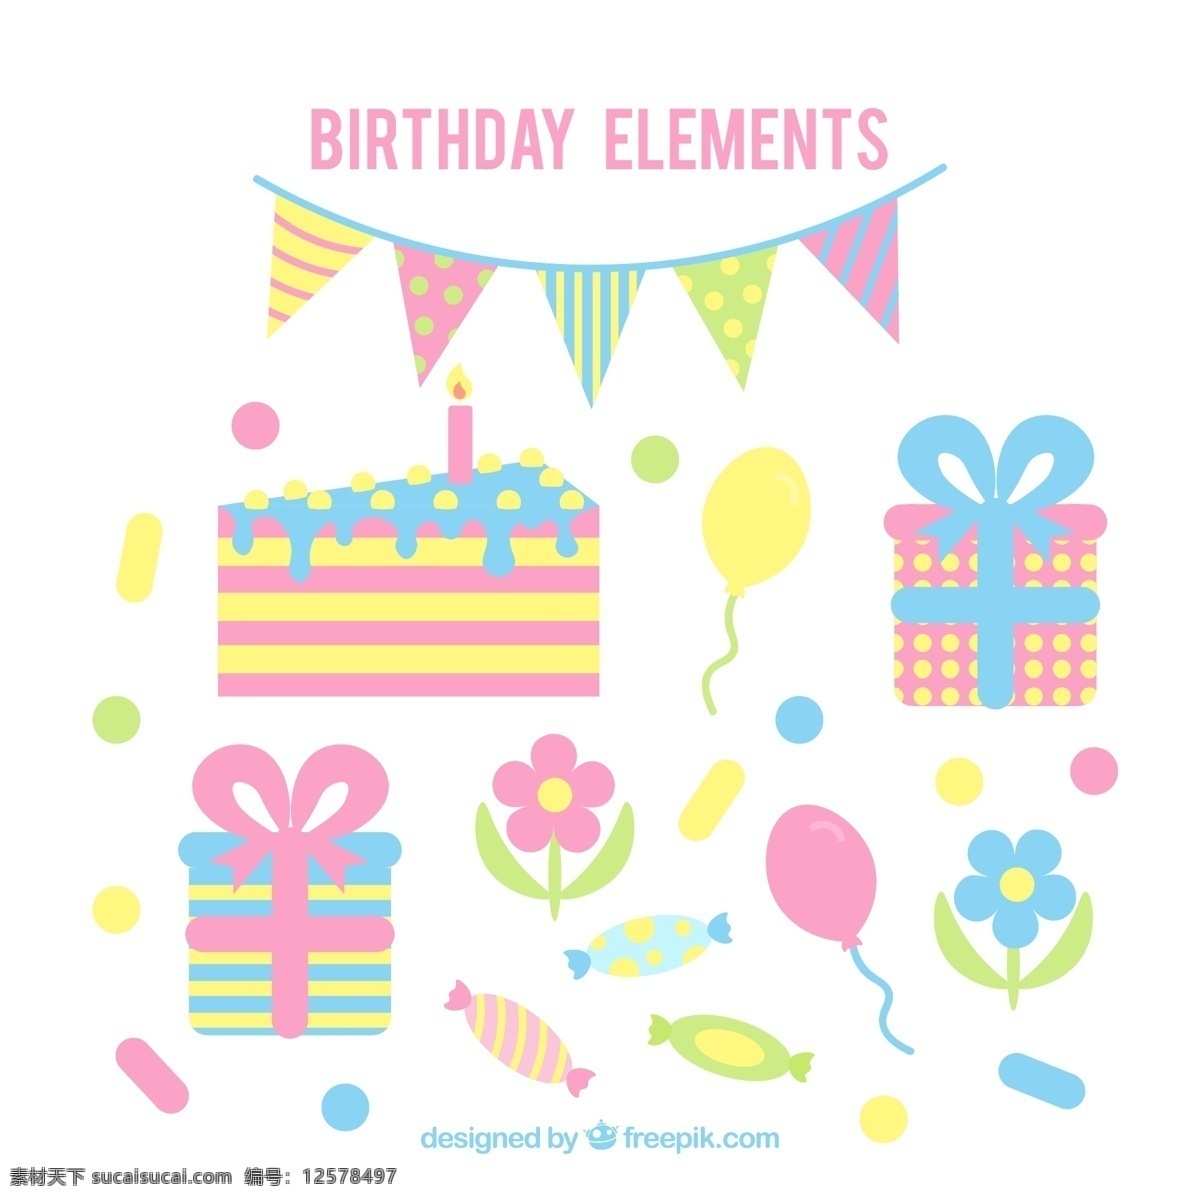 彩色 生日 派对 元素 矢量 三角拉旗 礼盒 礼物 气球 三角蛋糕 花卉 糖果 装饰物 生日快乐